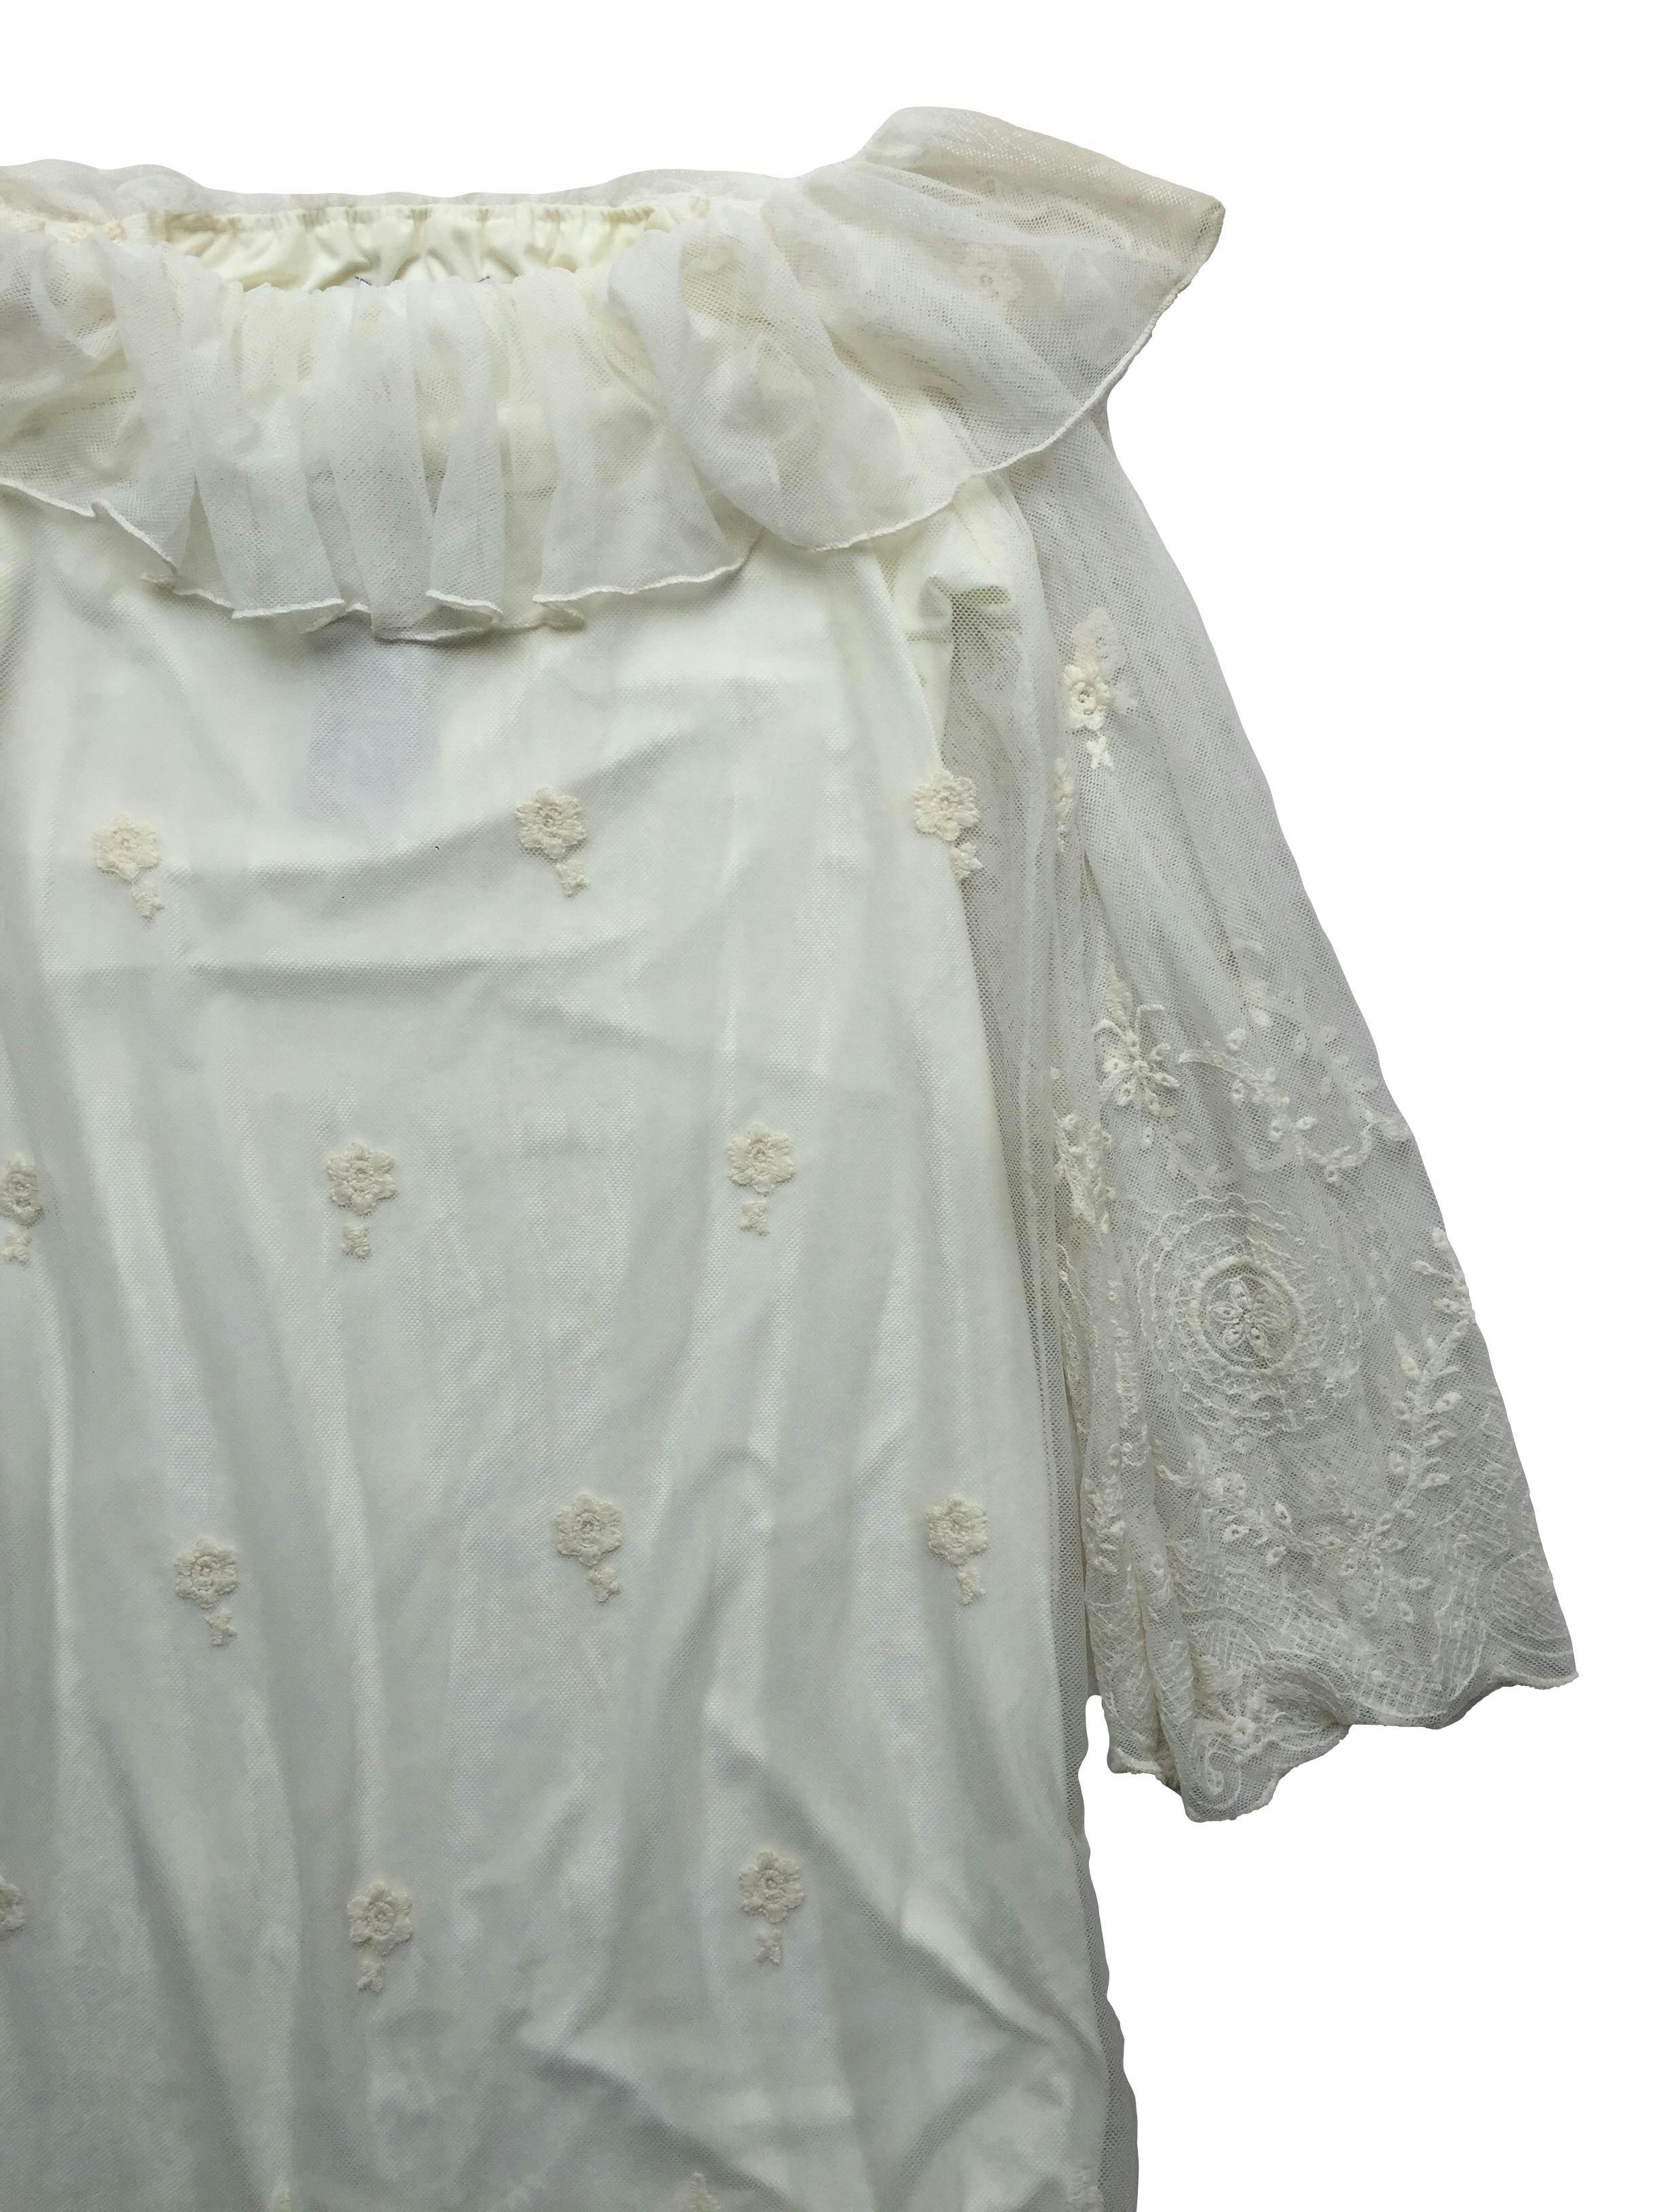 Vestido Emporium de mesh crema con bordado al tono, cuello amplio con volante, forrado. Busto 90cm Largo 88cm. Nuevo con etiqueta